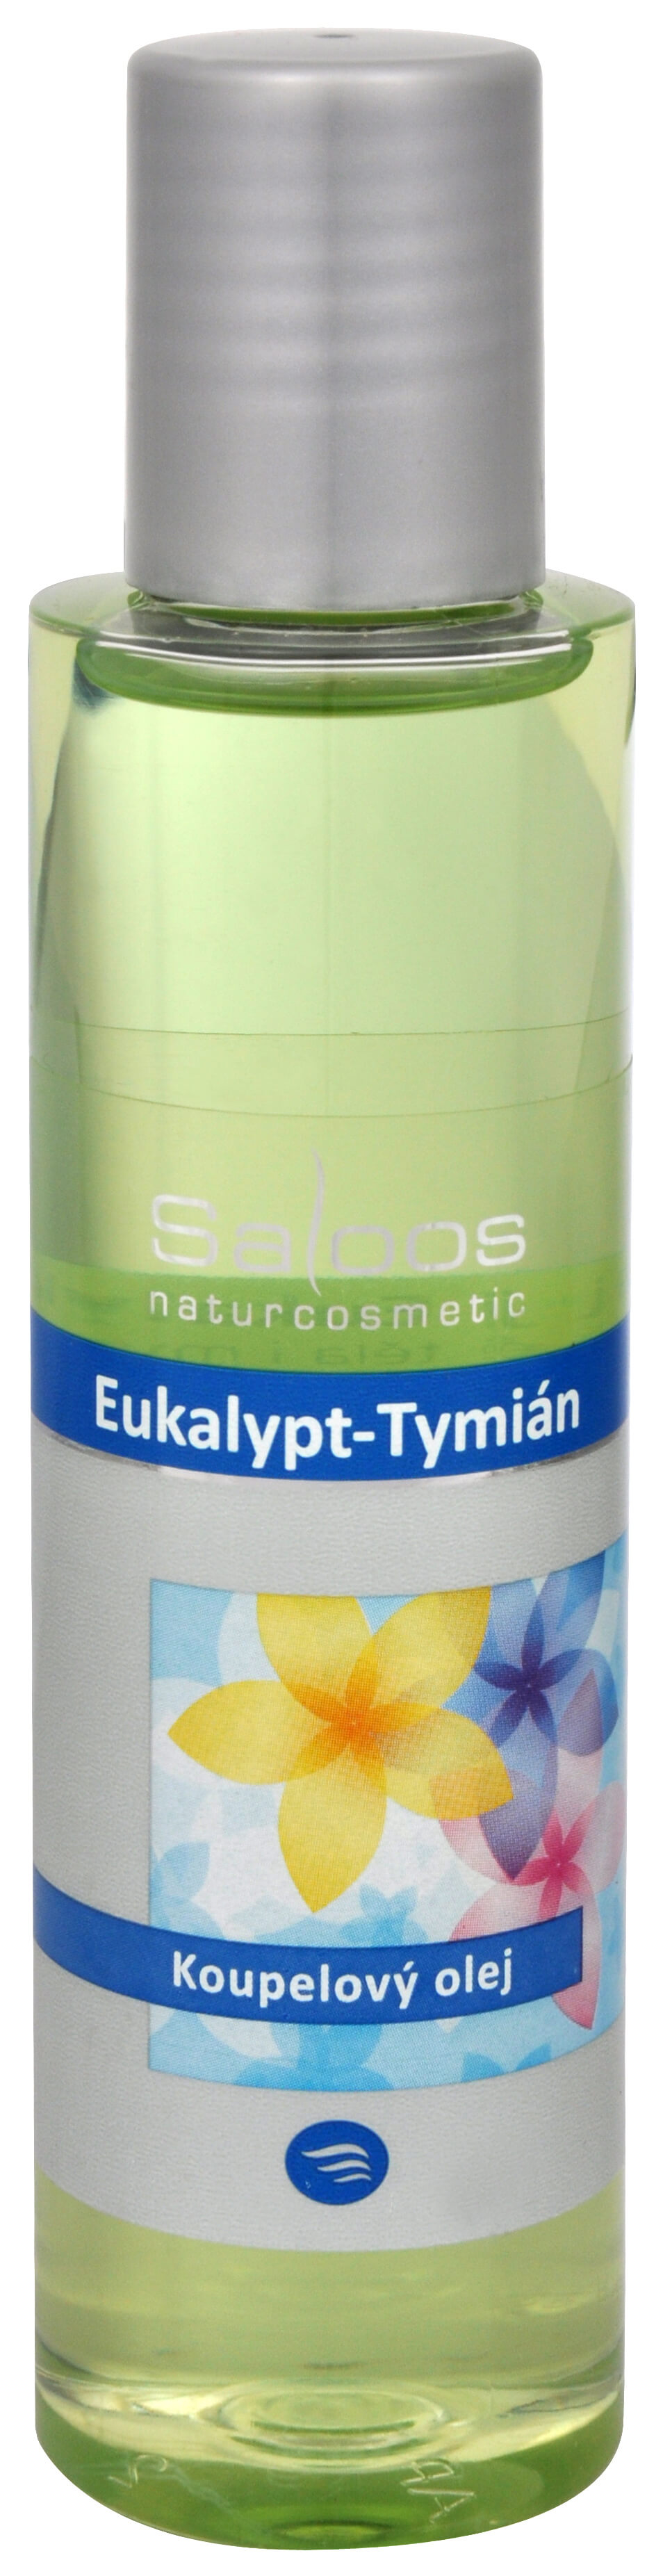 Saloos Koupelový olej - Eukalypt-Tymián 125 ml